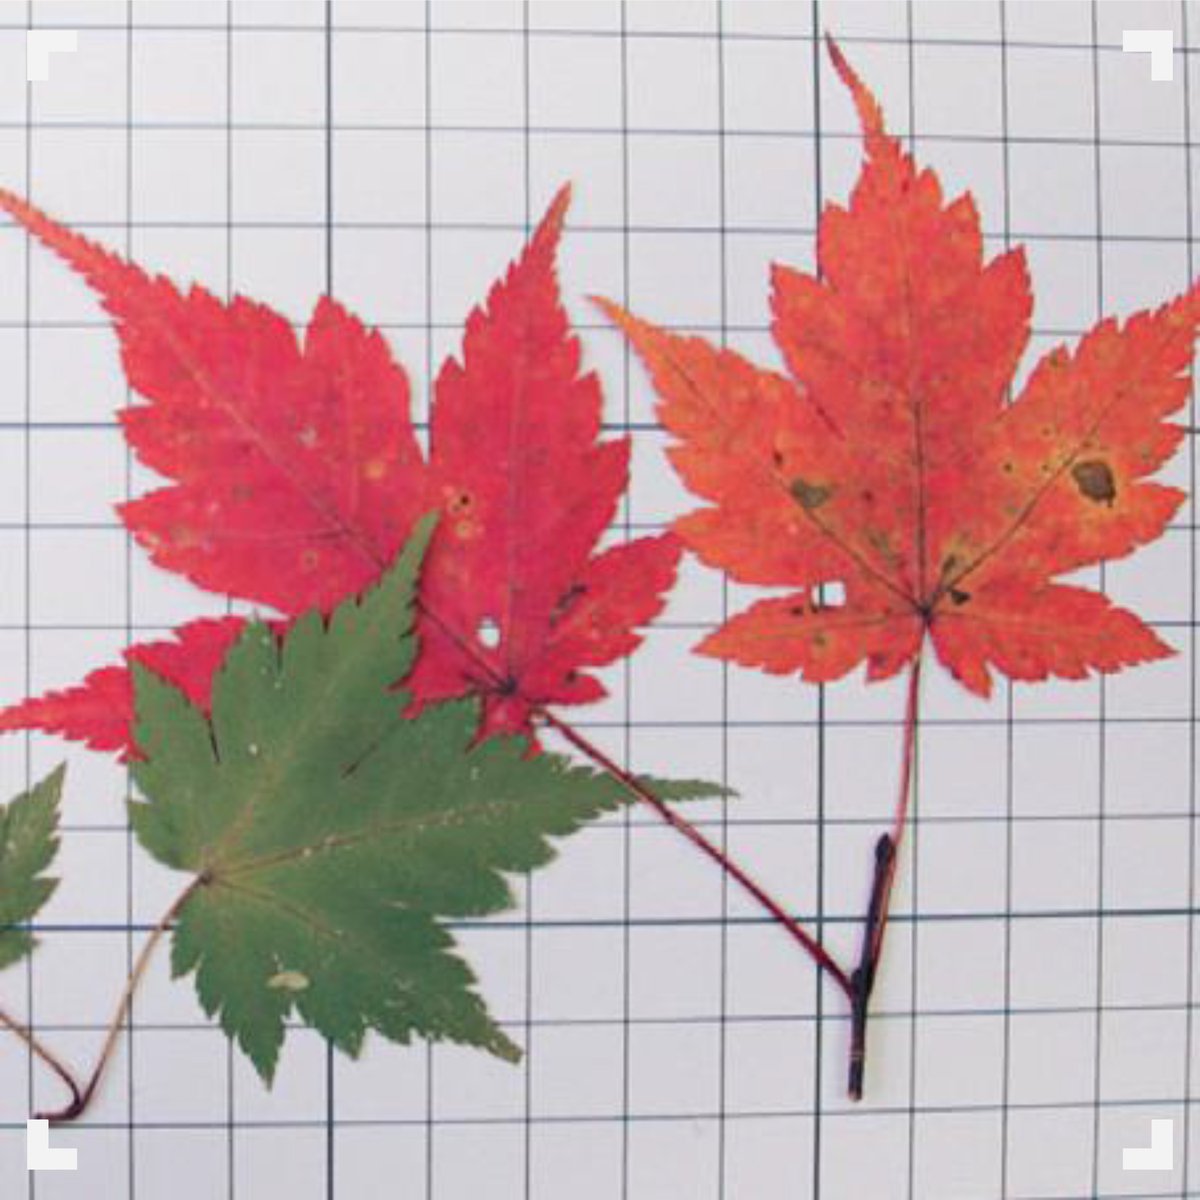 Jaxa宇宙教育センター 観察カードや図鑑を作ろう 秋にいろいろな草木が色づくことを もみじ といいますが もみじ 狩り というとカエデの紅葉を指します カエデは紅葉を代表する植物なのですね 色々な種類のカエデの葉を集め 図鑑を作って